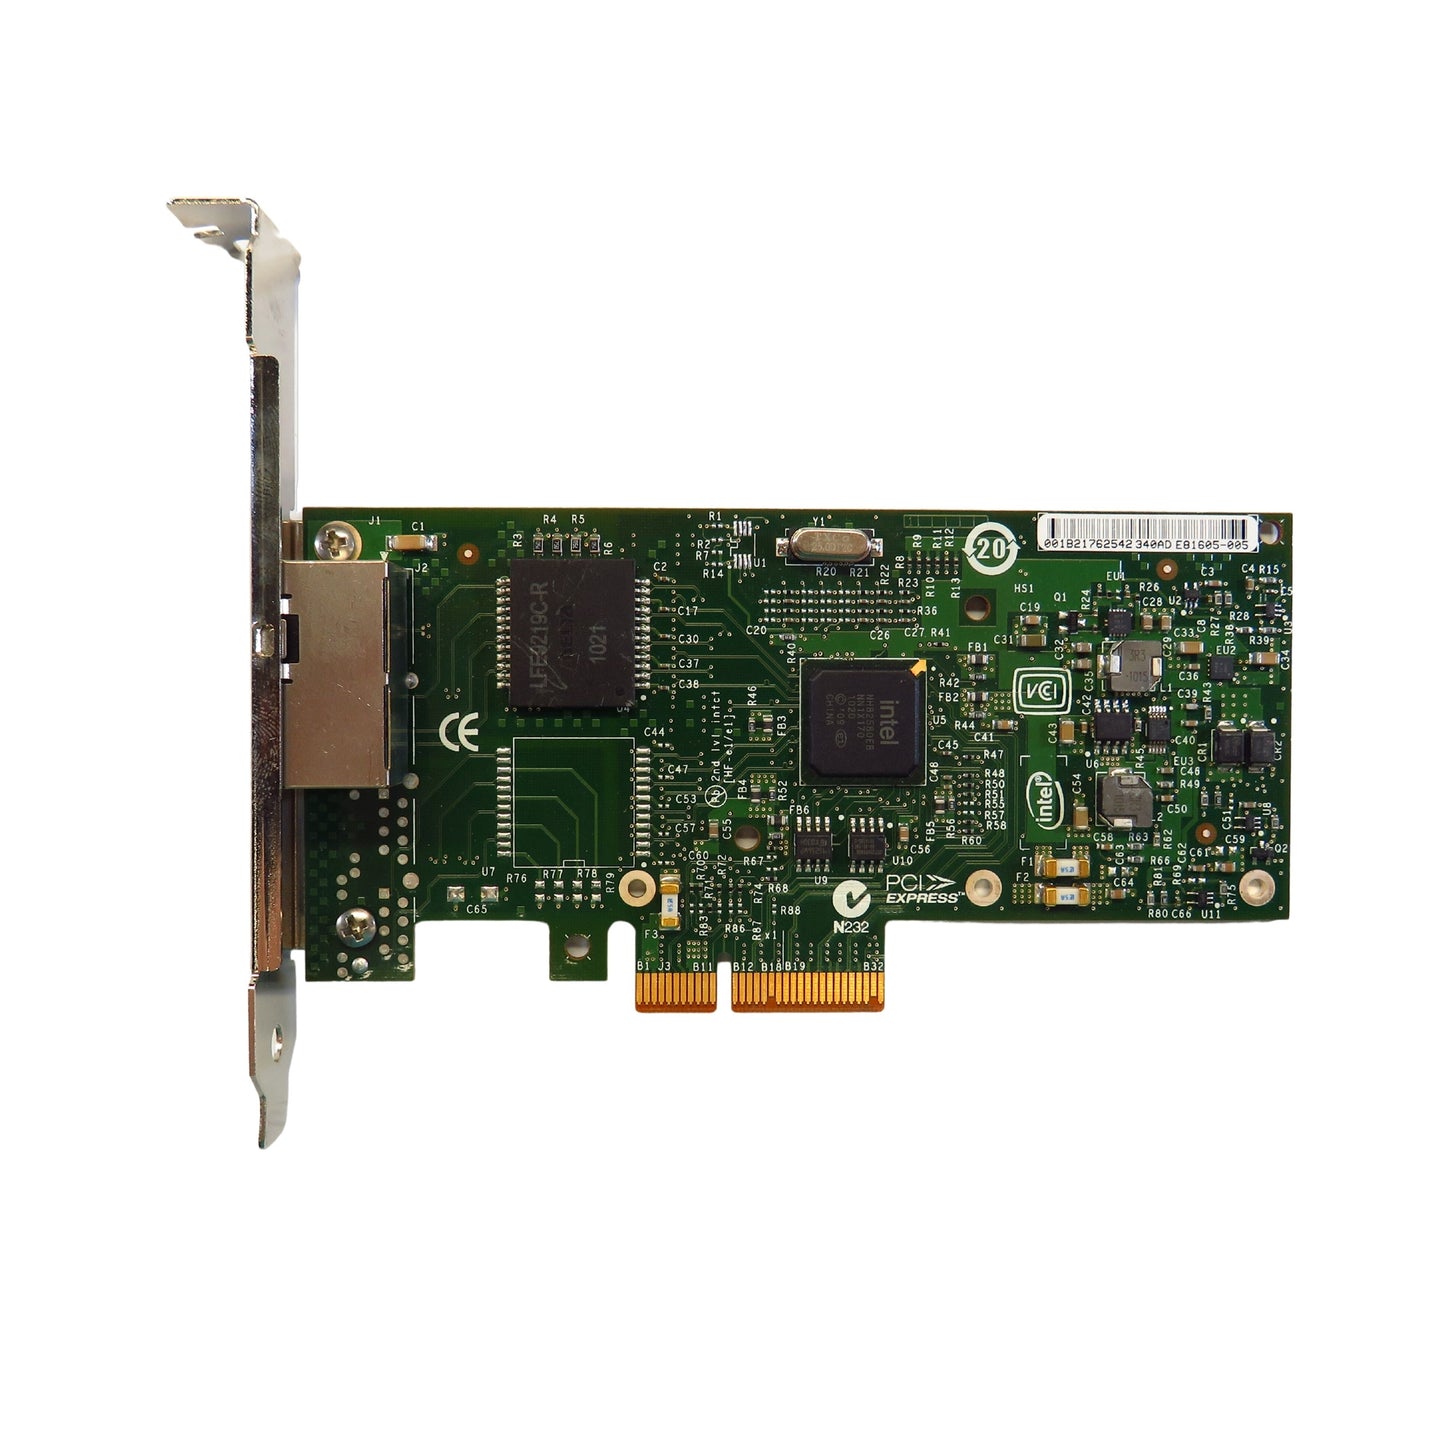 Lenovo 49Y4232 I340-T2 2 Port Gigabit Ethernet PCIe Server Adapter Card (Refurbished)